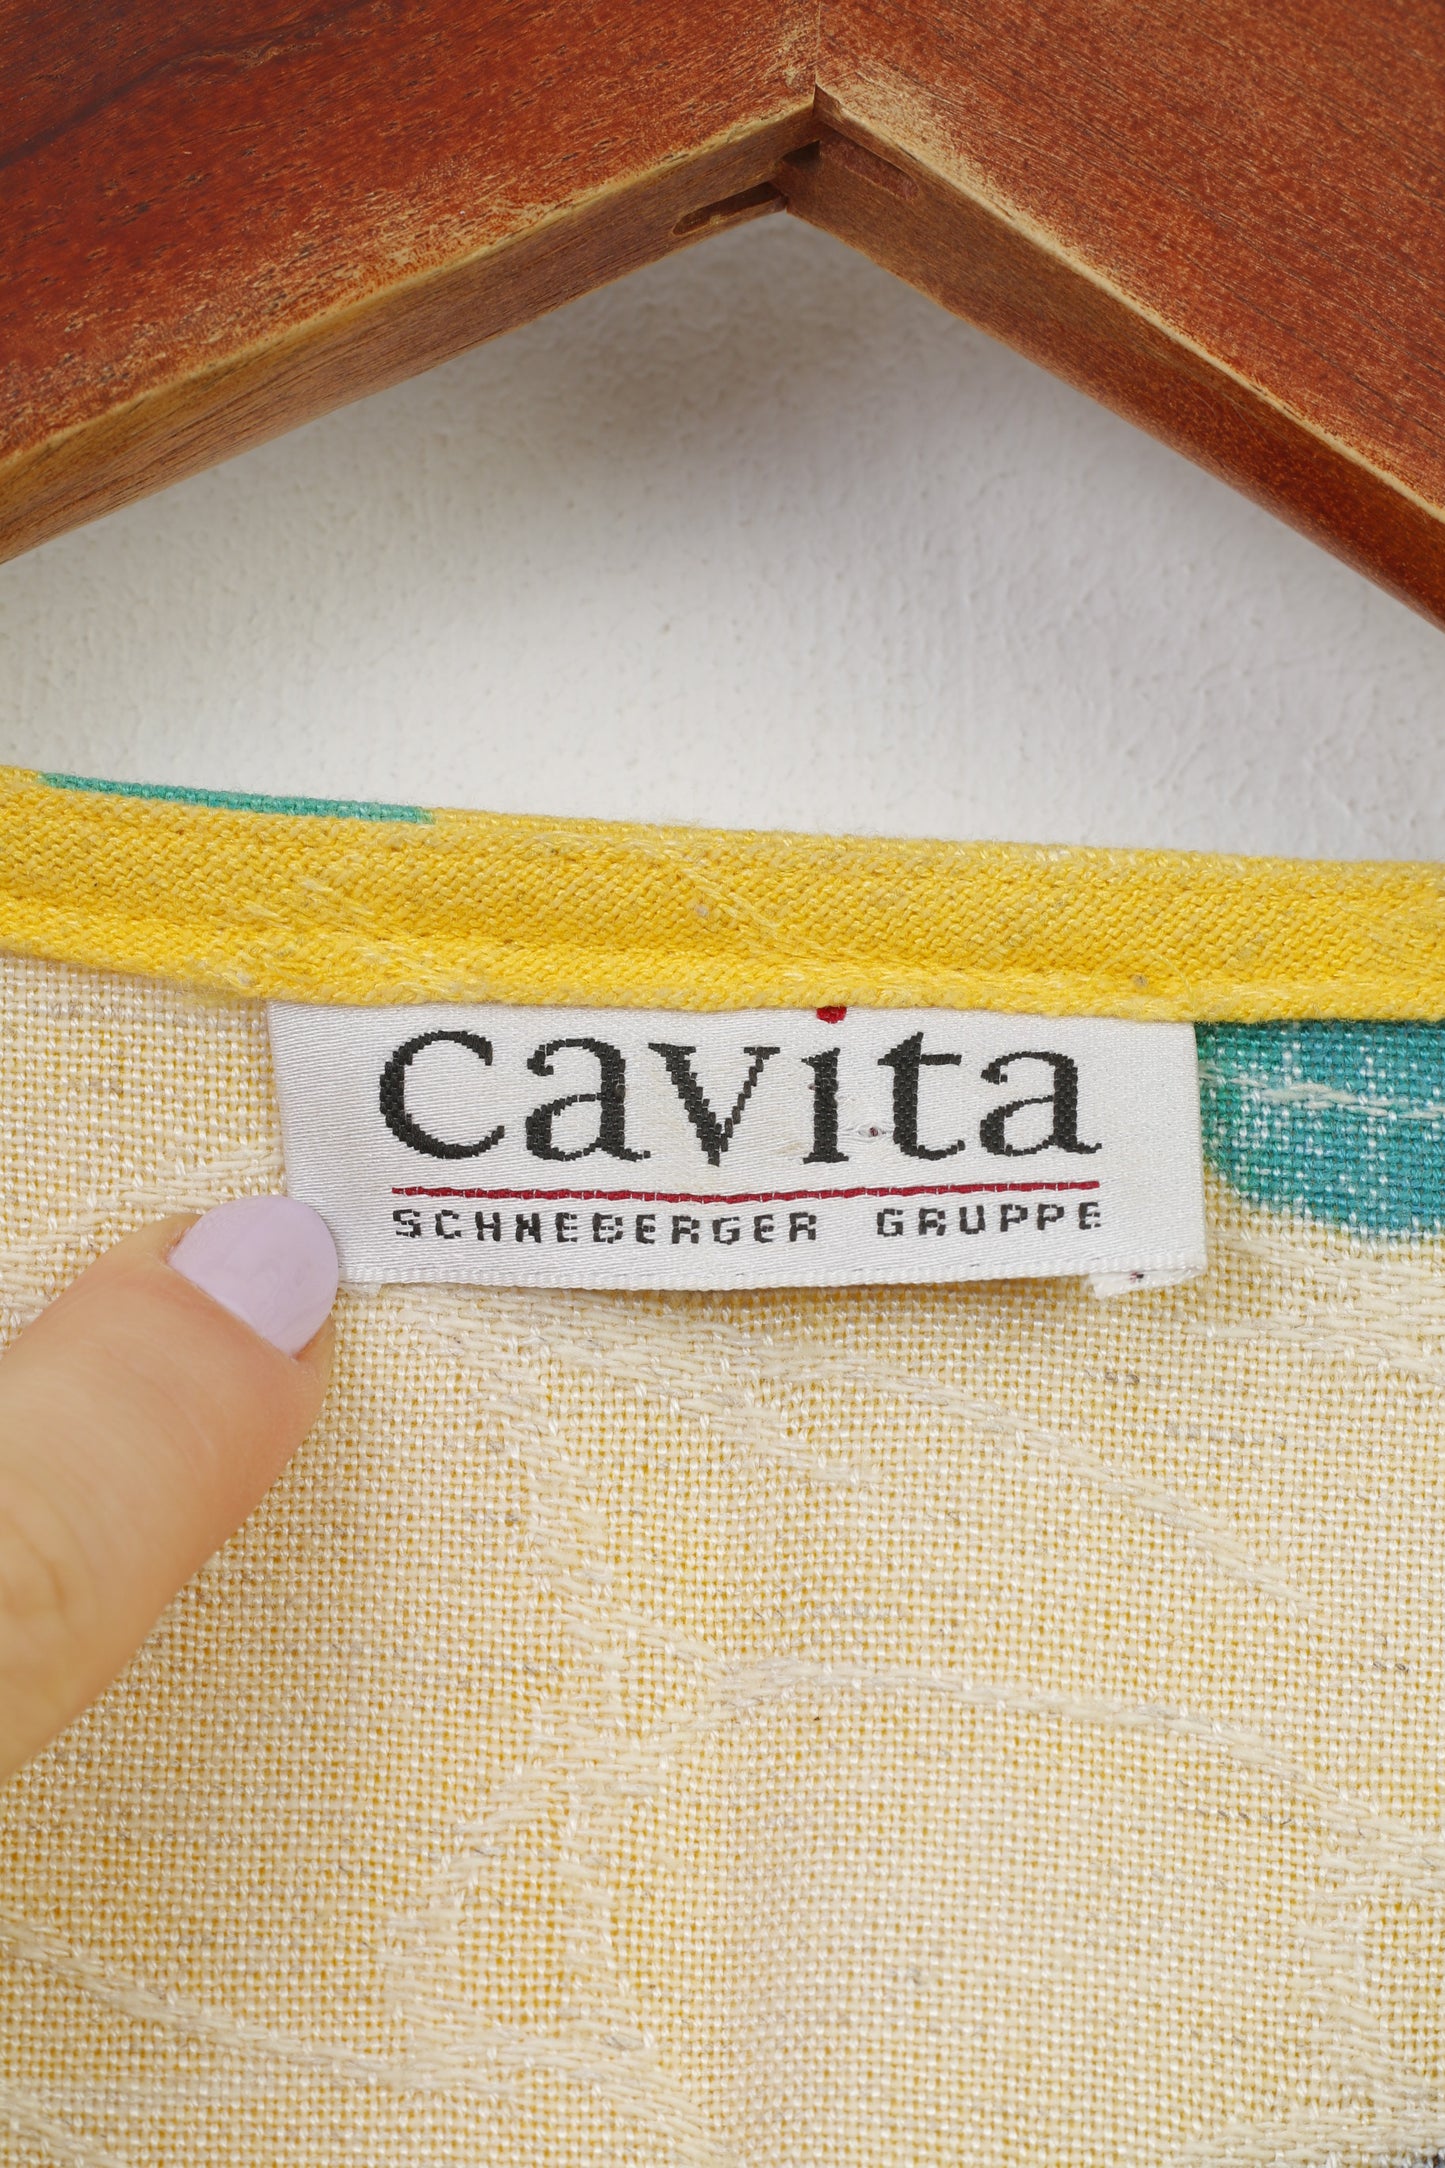 Cavita Schneberger Gruppe Women 18 XL Shirt Button Front Flower Print Blouse Short Sleeve Yellow Summer Vintage V Neck Top